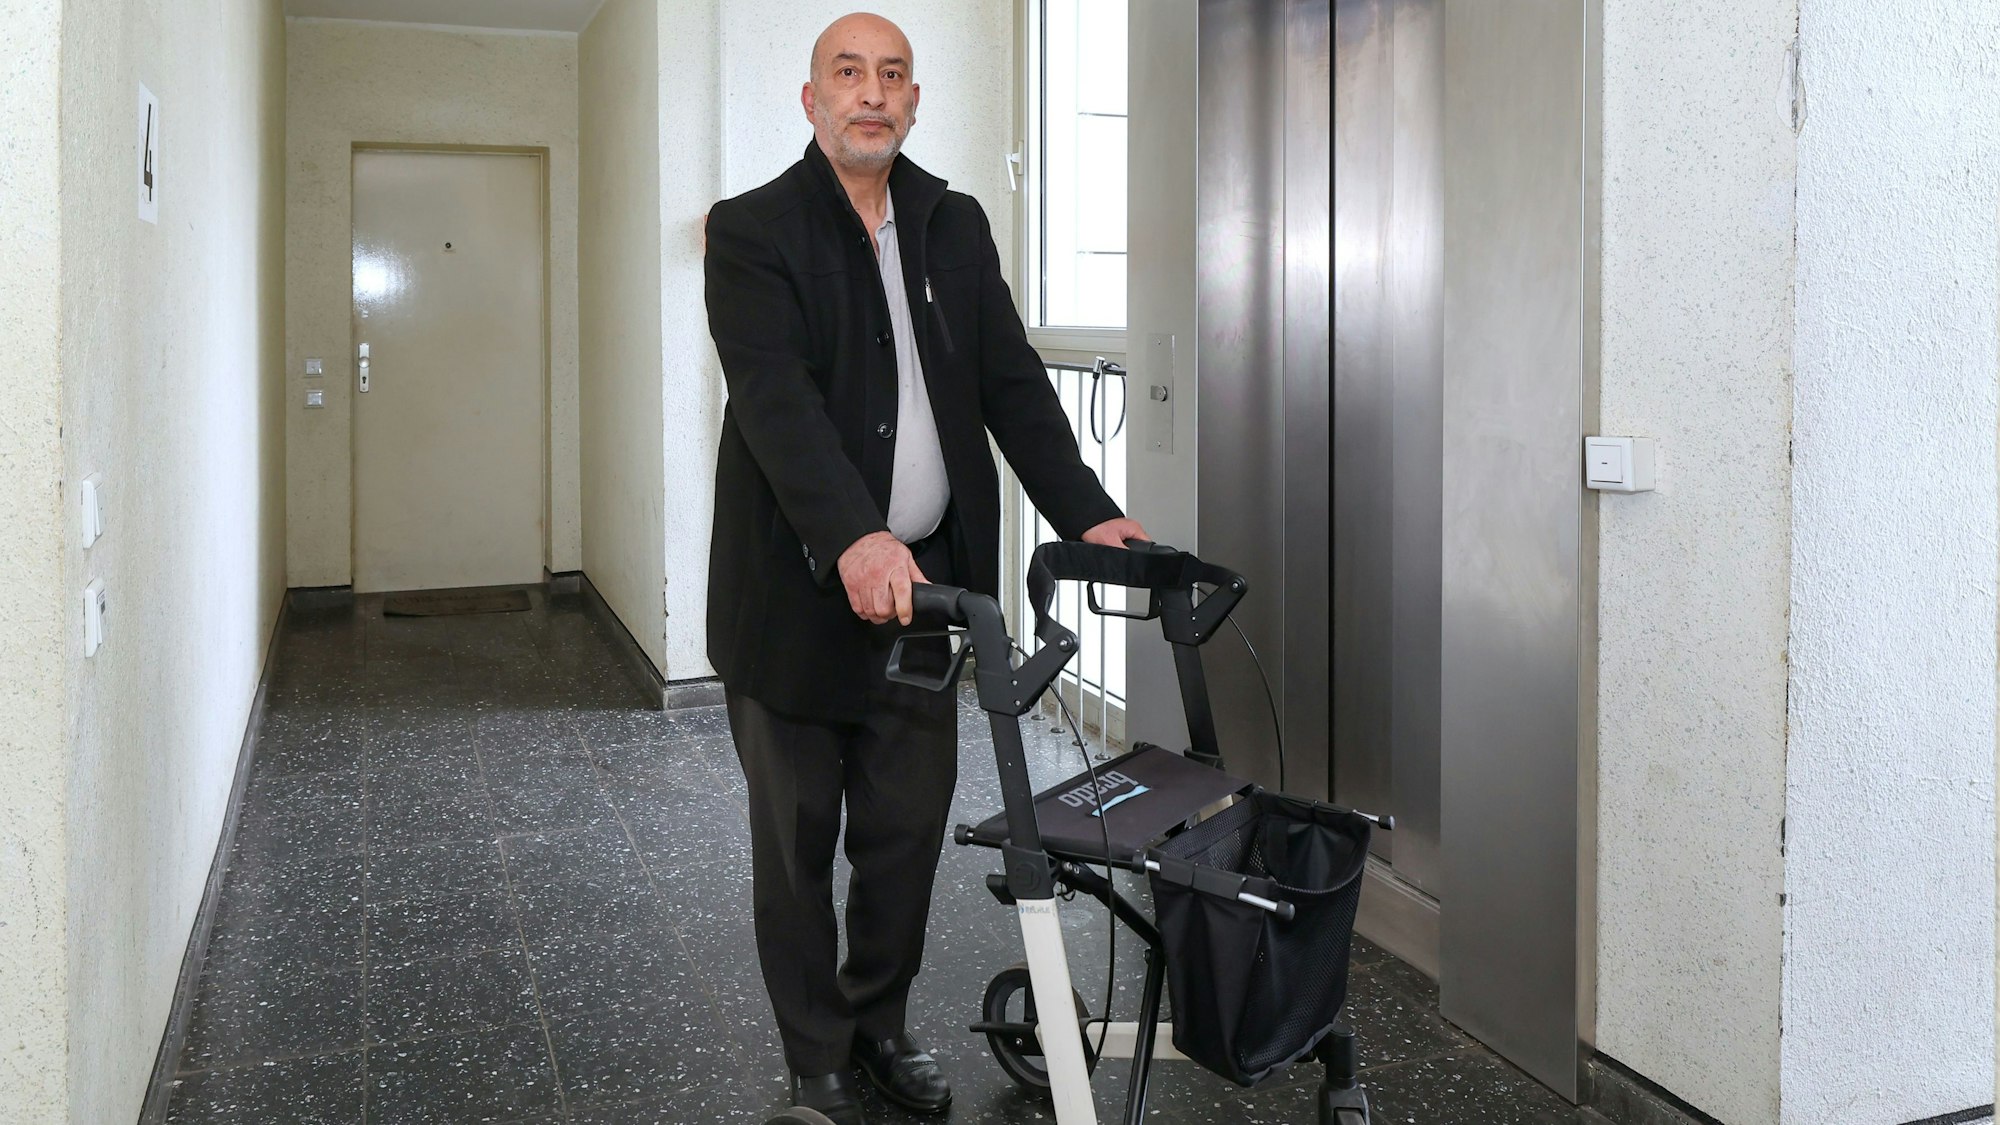 Zu sehen ist Halis Yildirim aus Bocklemünd in der Vorderansicht vor einem Aufzug mit Rollator stehend.